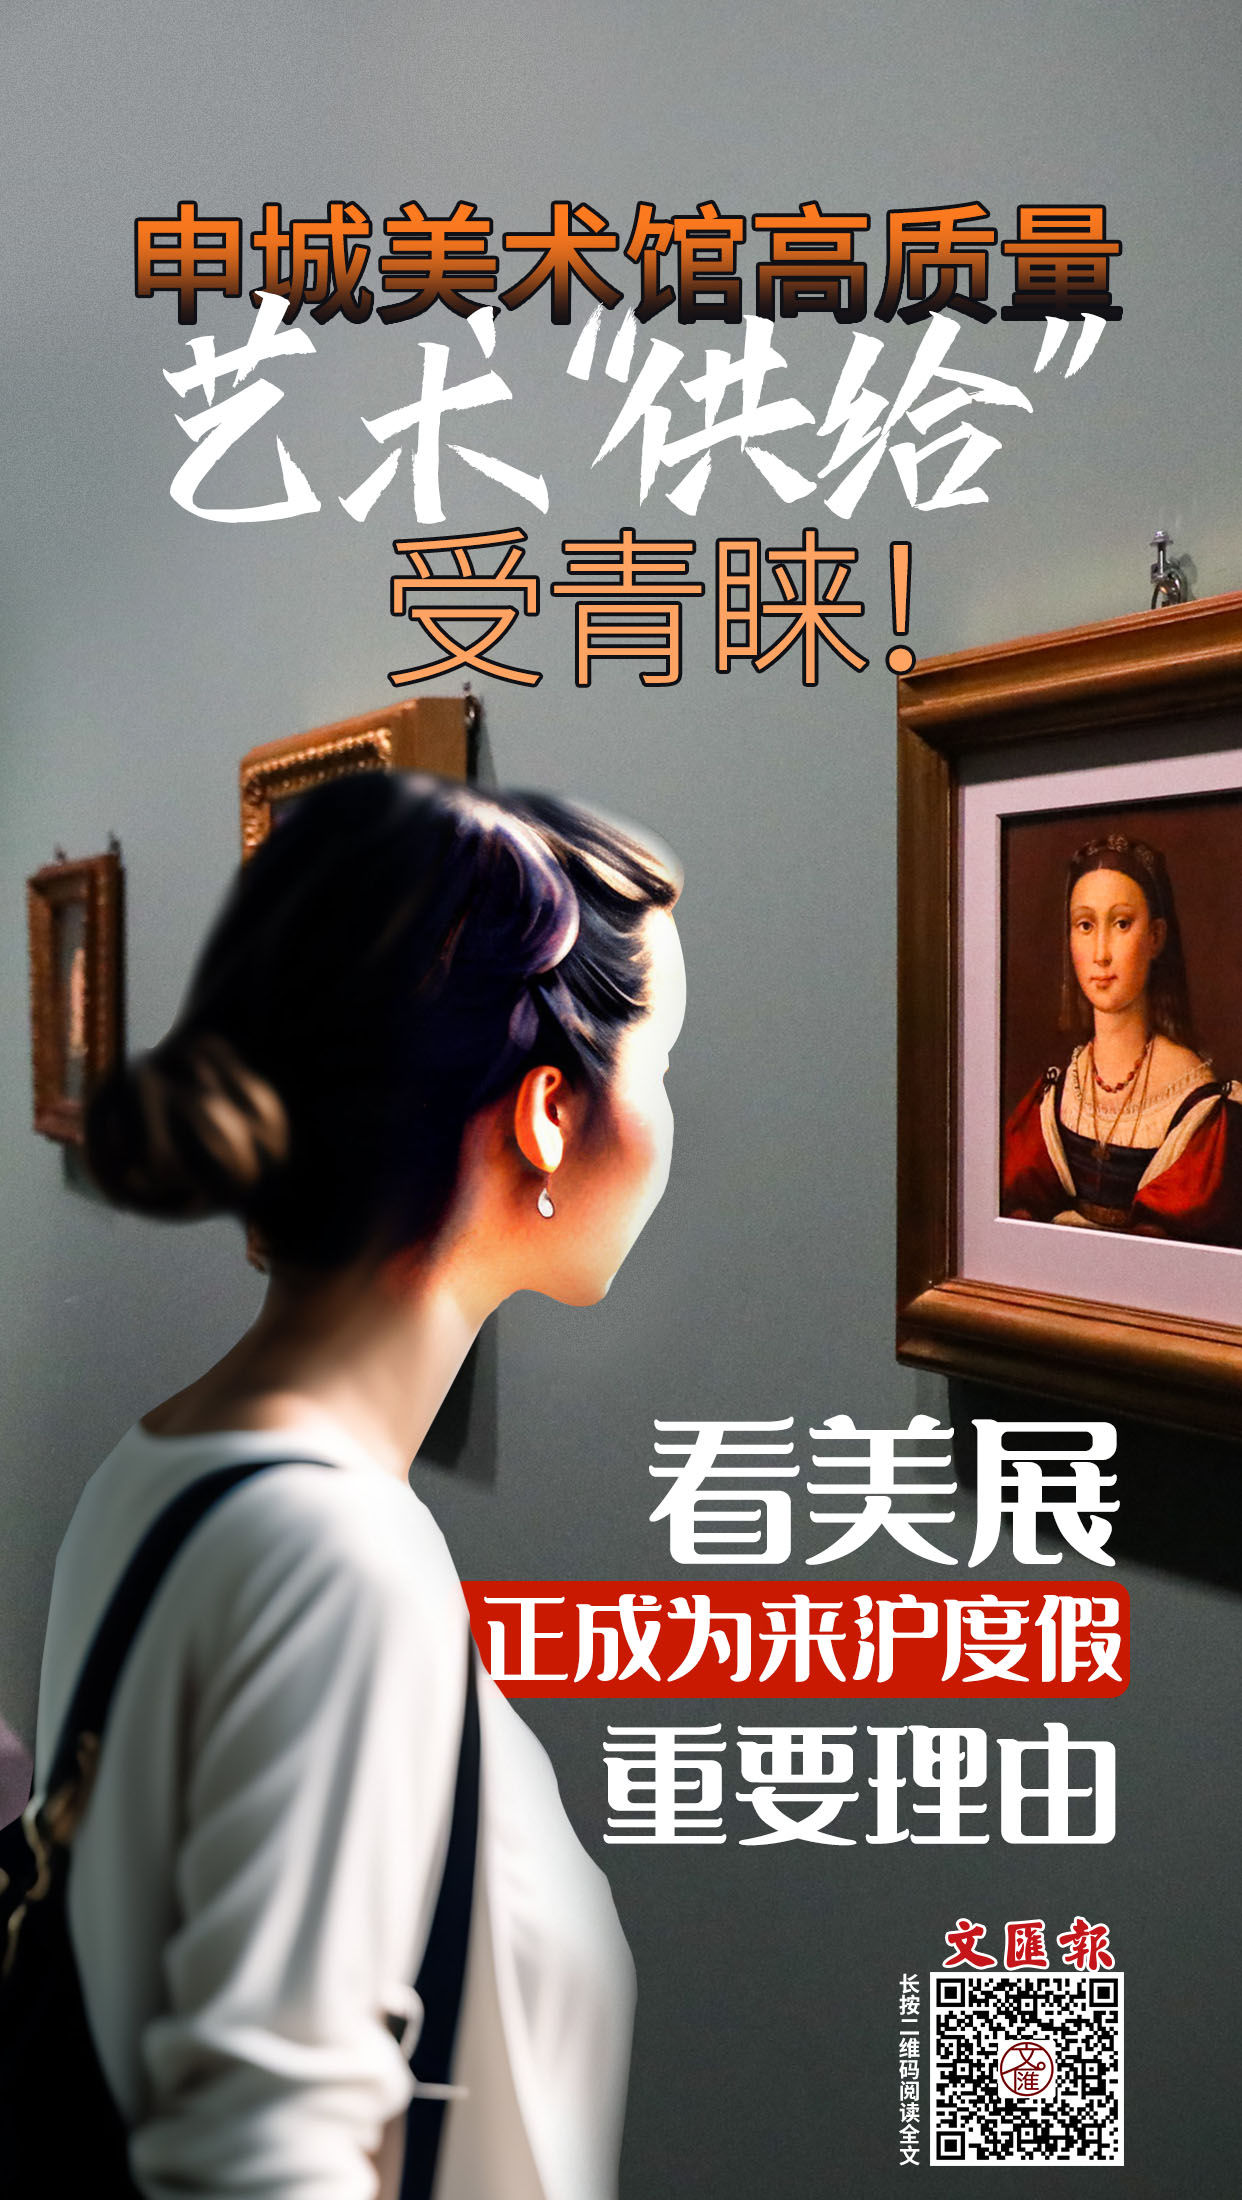 海报 | 申城美术馆高质量艺术“供给”受青睐！看美展，正成为来沪度假重要理由